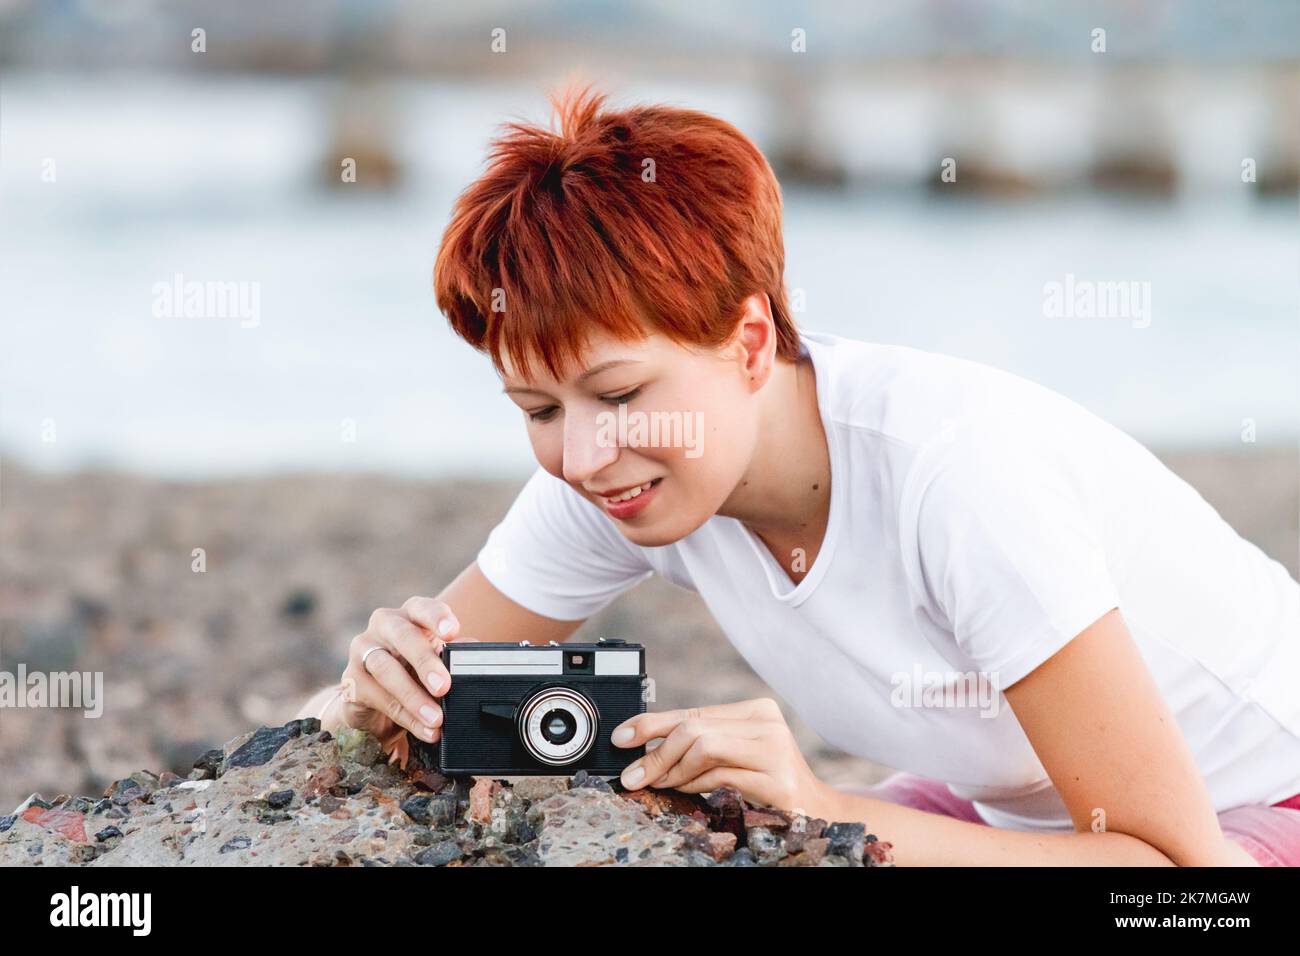 Une femme aux cheveux rouges courts tourne sur un appareil photo de film vintage. La photographie comme passe-temps. Appareil photo rétro avec objectif manuel. Banque D'Images